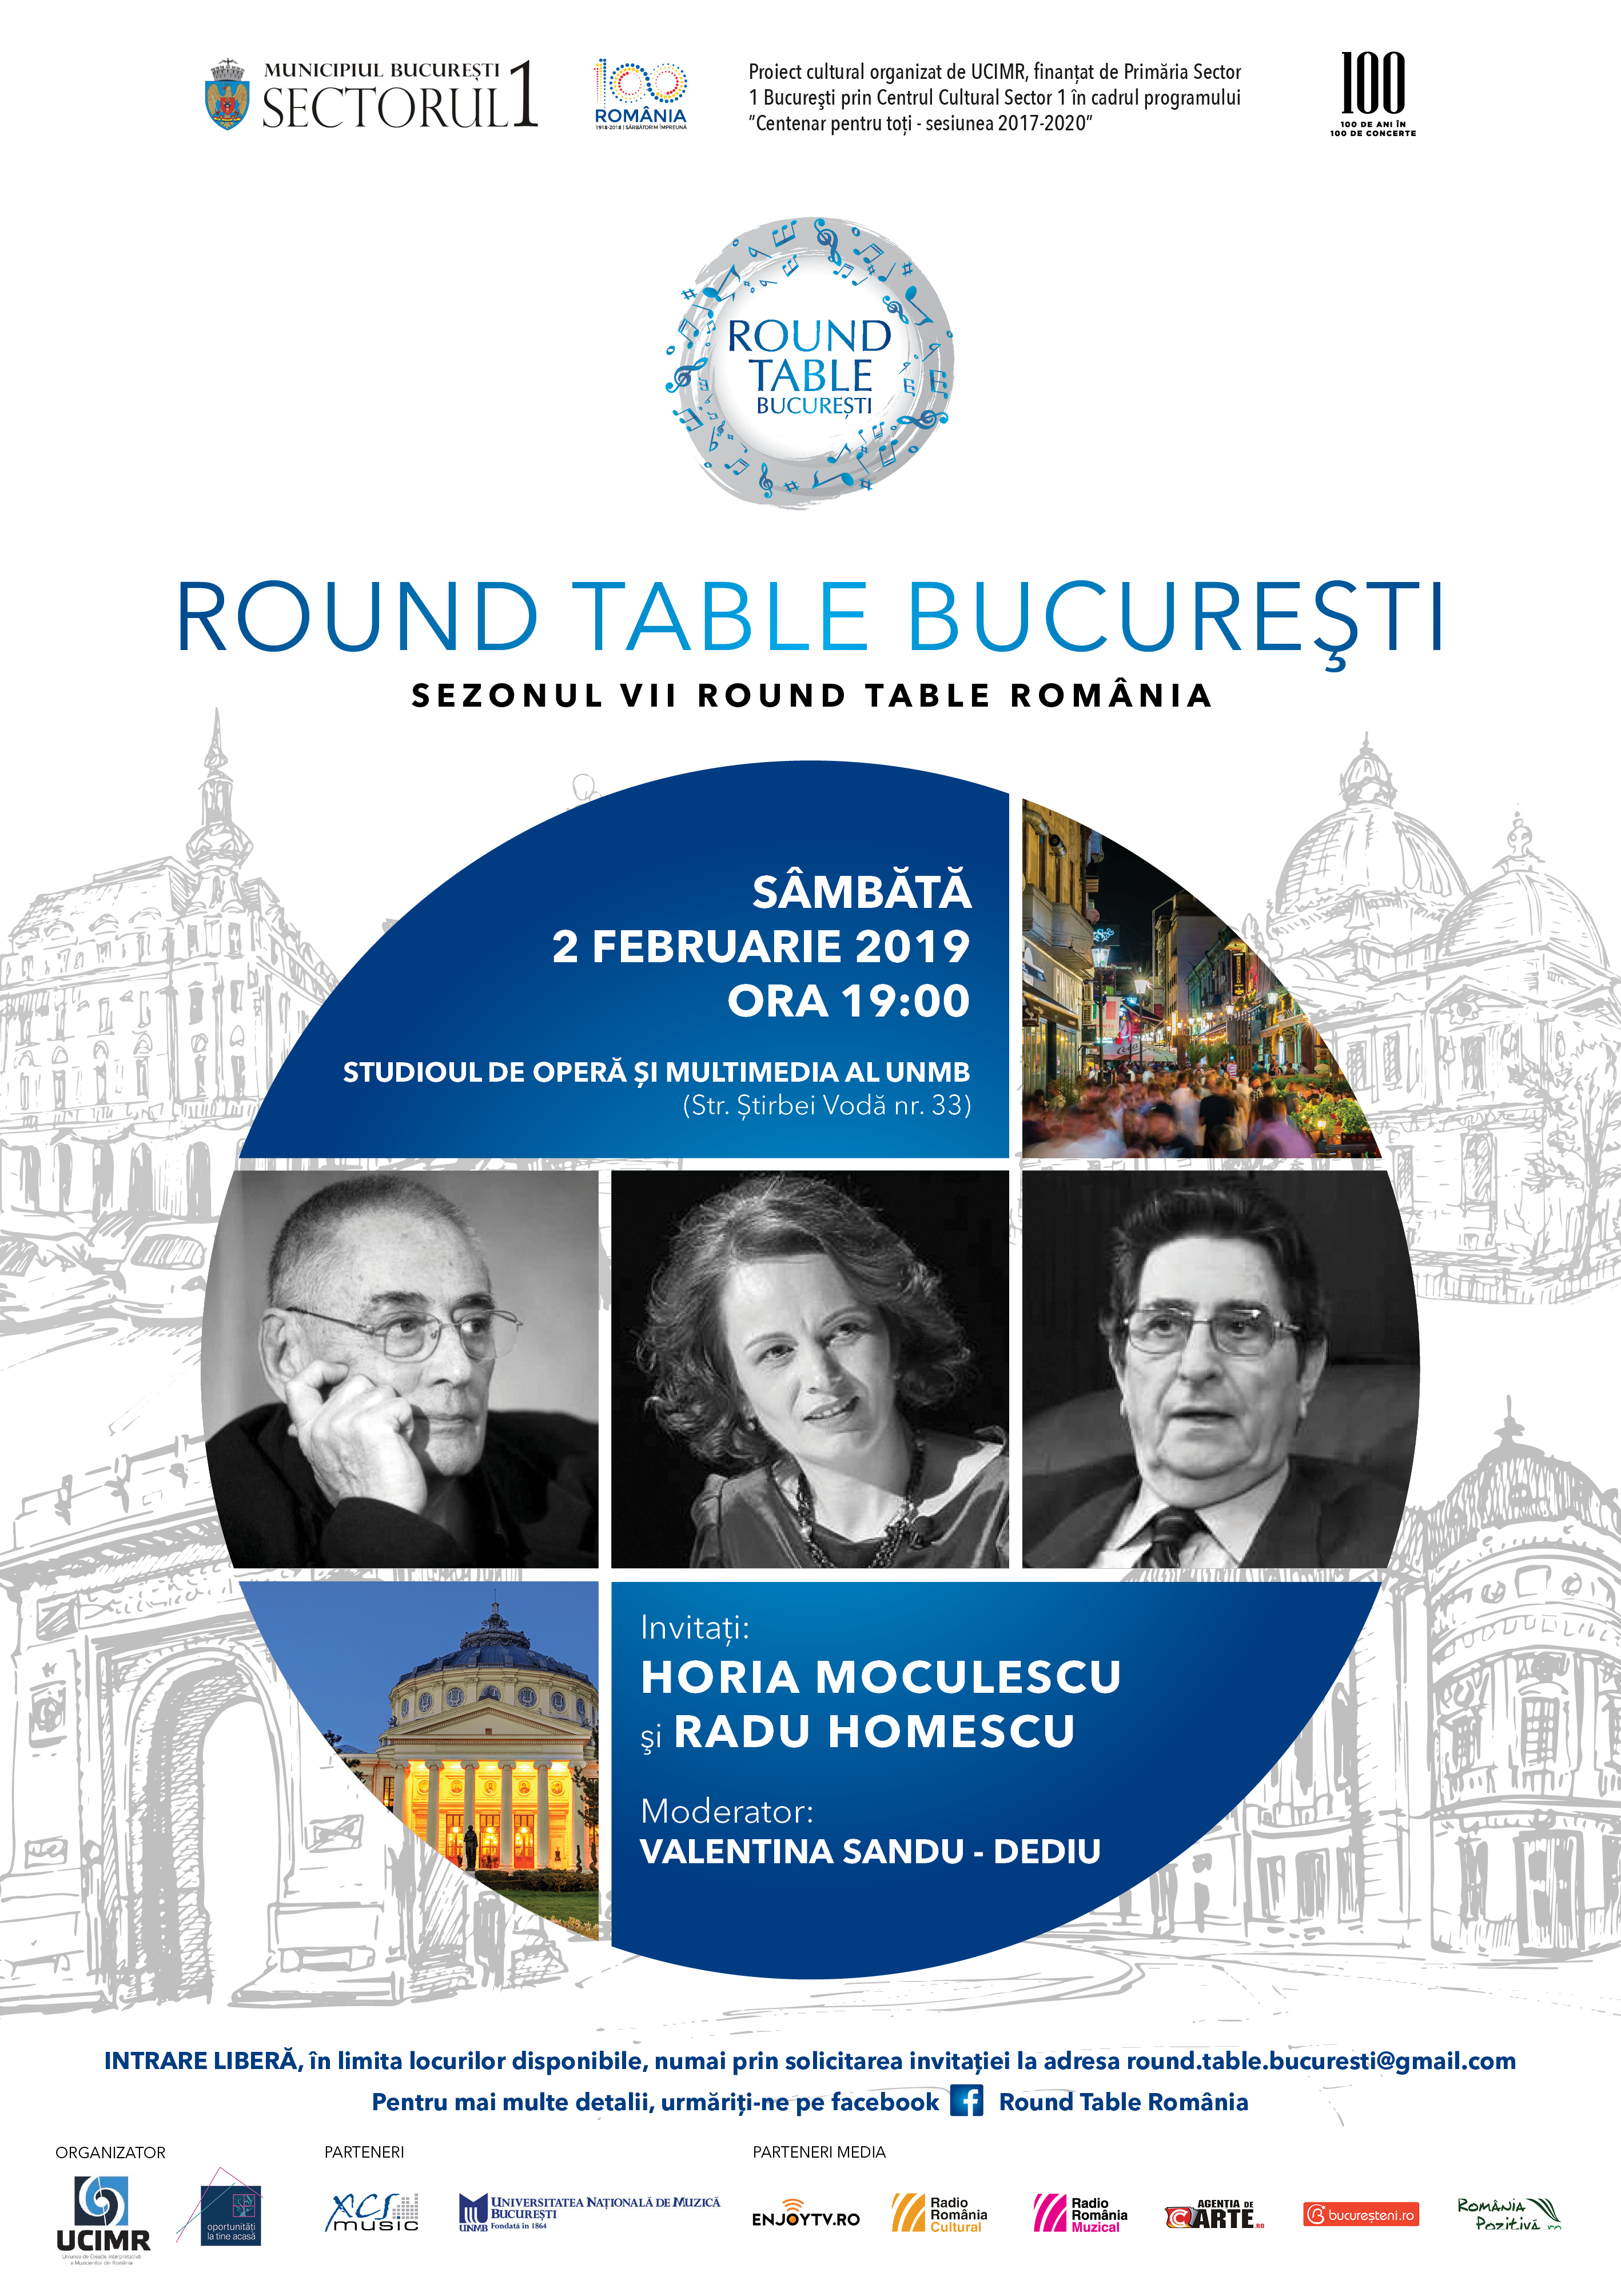 Round Table Horia Moculecu si Radu Homescu